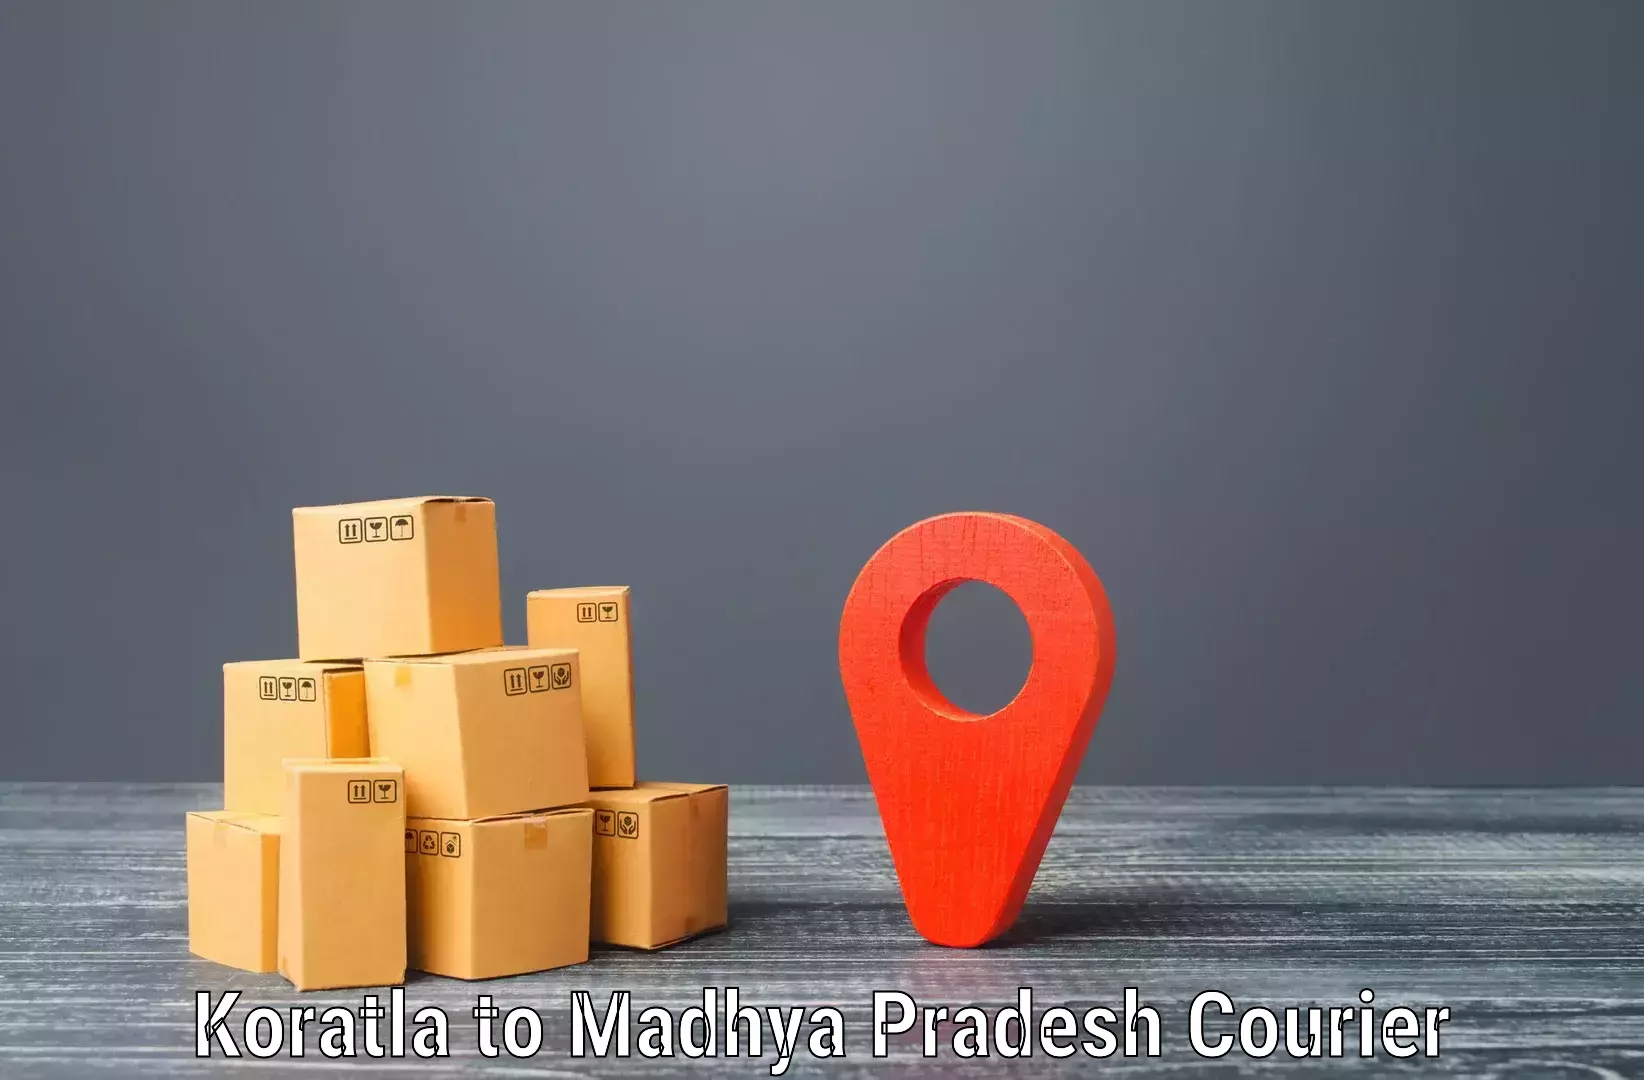 Modern delivery methods Koratla to Bhopal